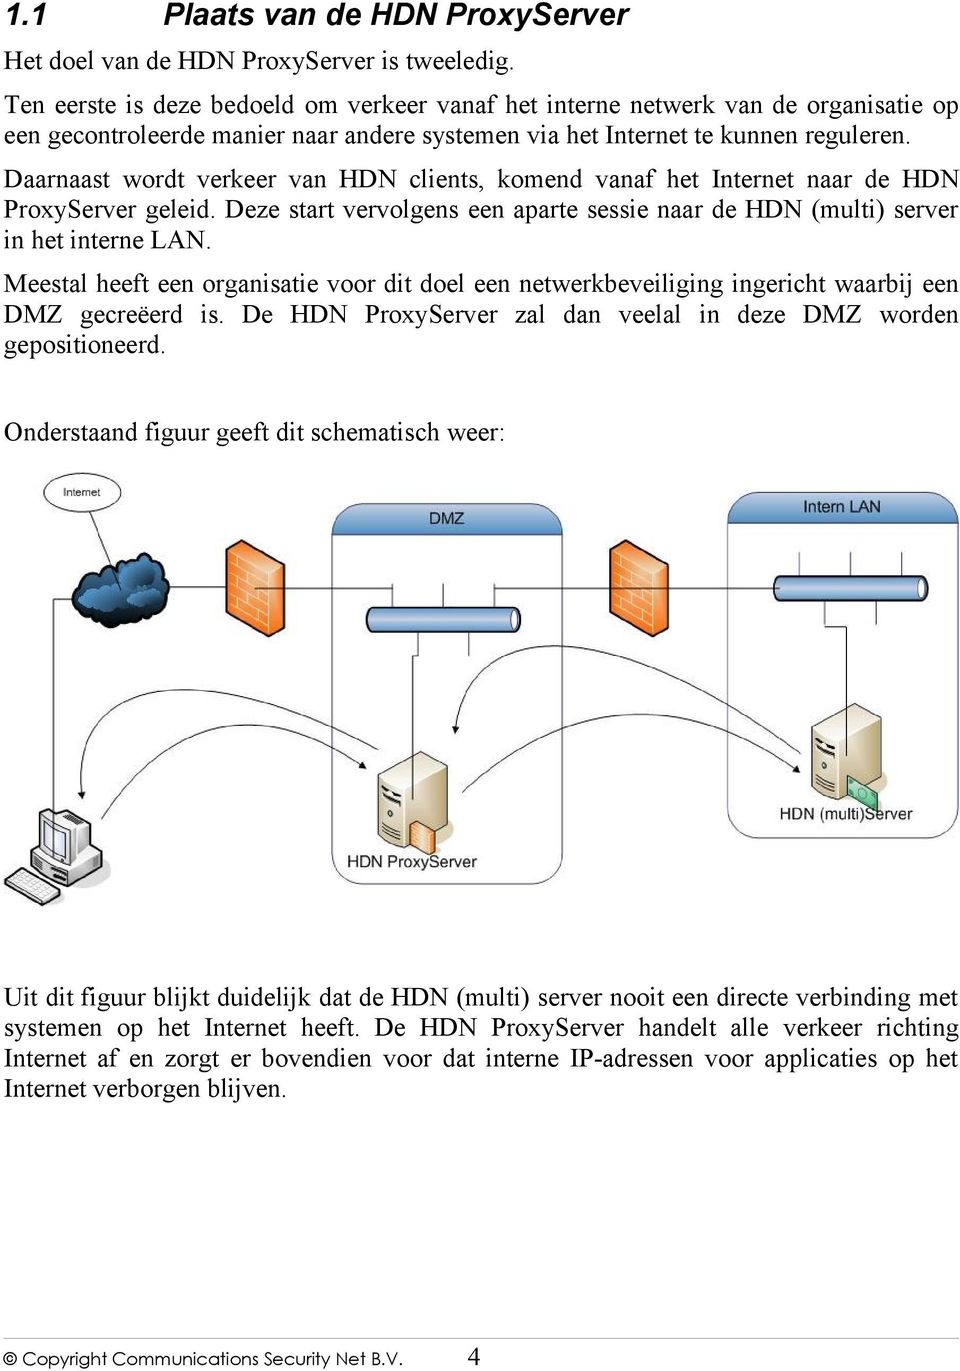 Daarnaast wordt verkeer van HDN clients, komend vanaf het Internet naar de HDN ProxyServer geleid. Deze start vervolgens een aparte sessie naar de HDN (multi) server in het interne LAN.